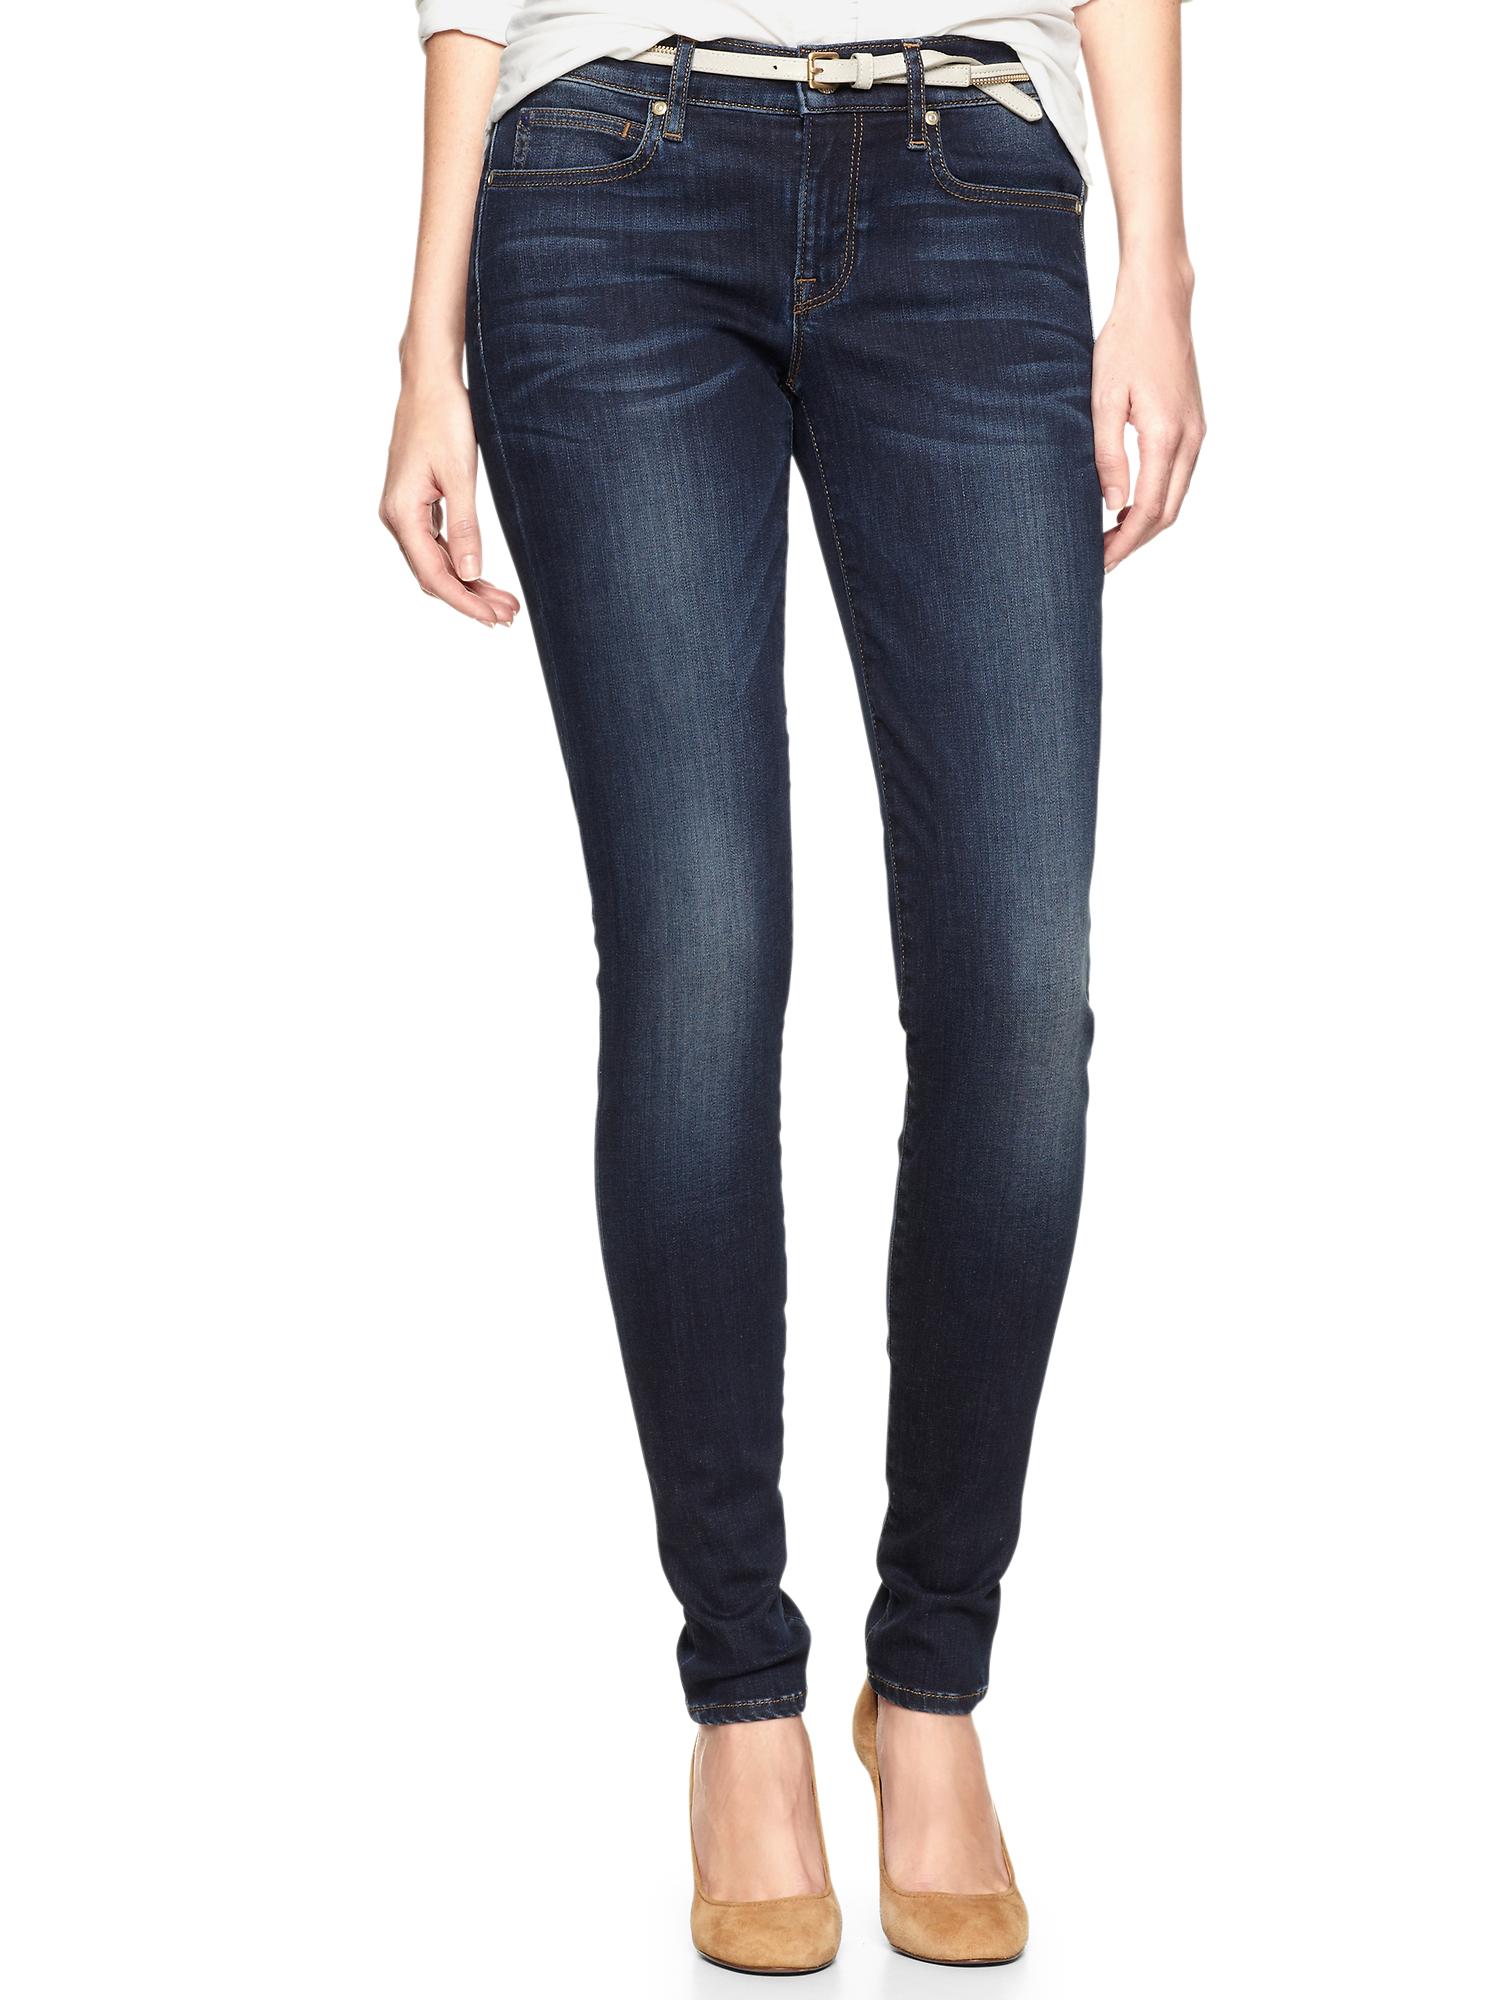 1969 gap legging jeans US 28/6  Gap leggings, Jean leggings, Gap denim  jeans